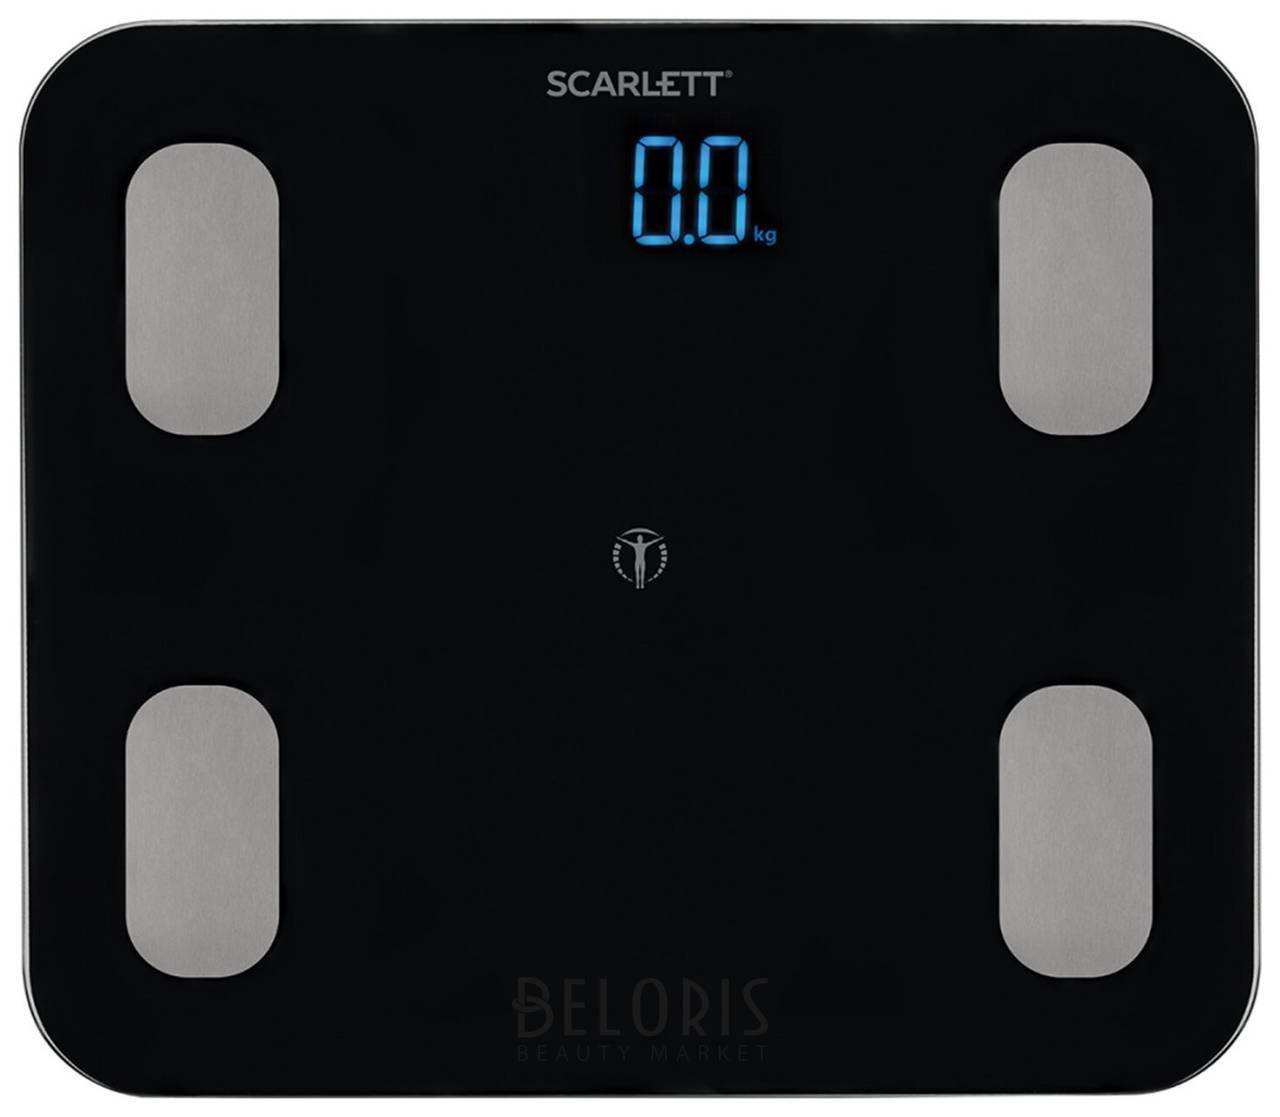 Весы напольные диагностические Scarlett Sc-bs33ed46, электронные, вес до 150 кг, Bluetooth, черные Scarlett